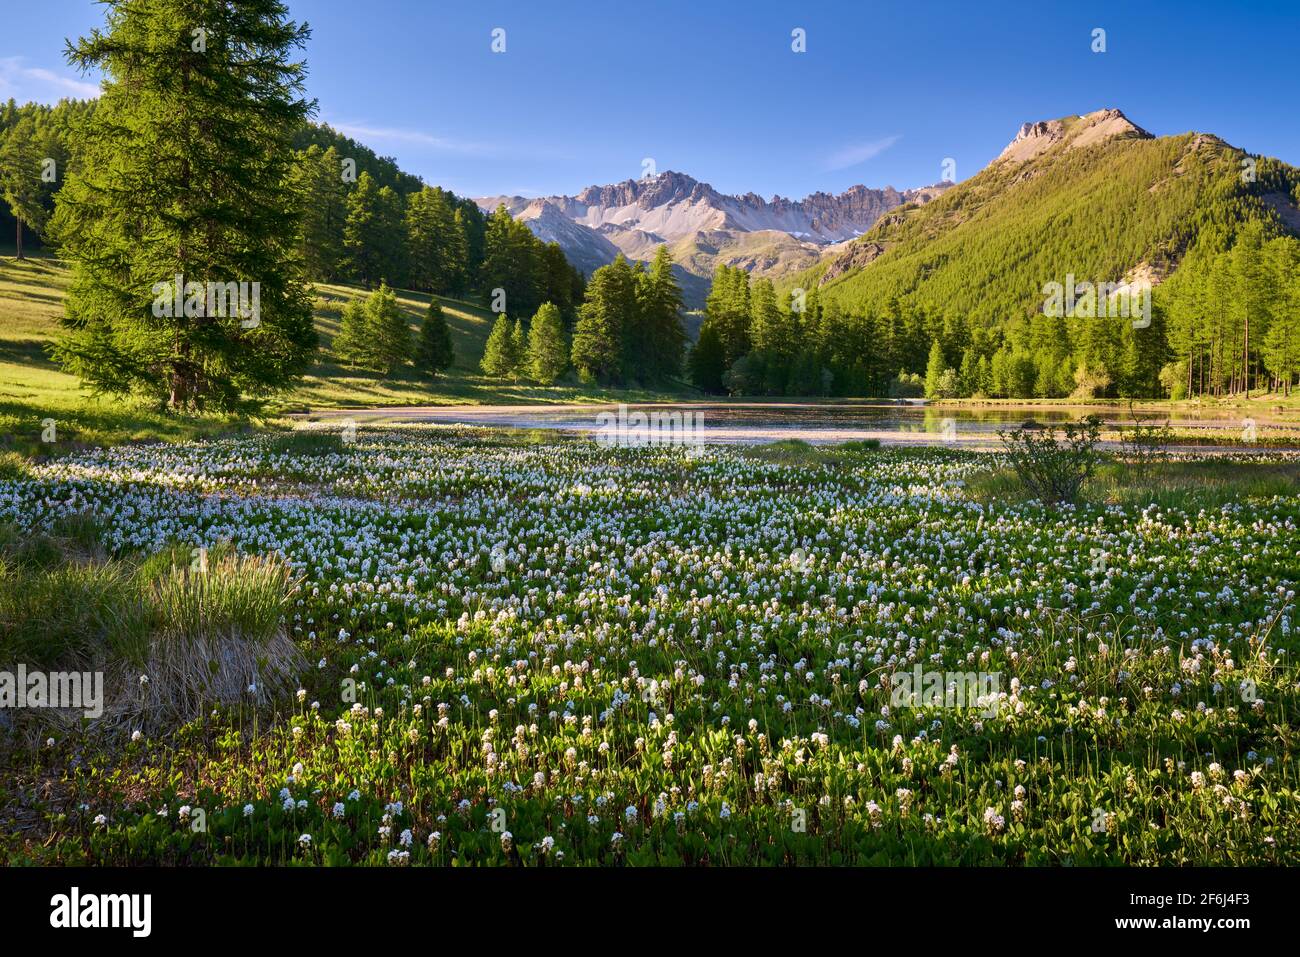 Parc naturel Queyras avec lac de Roue couvert de bogbean fin du printemps. Arvieux, Hautes-Alpes, Alpes françaises, France Banque D'Images